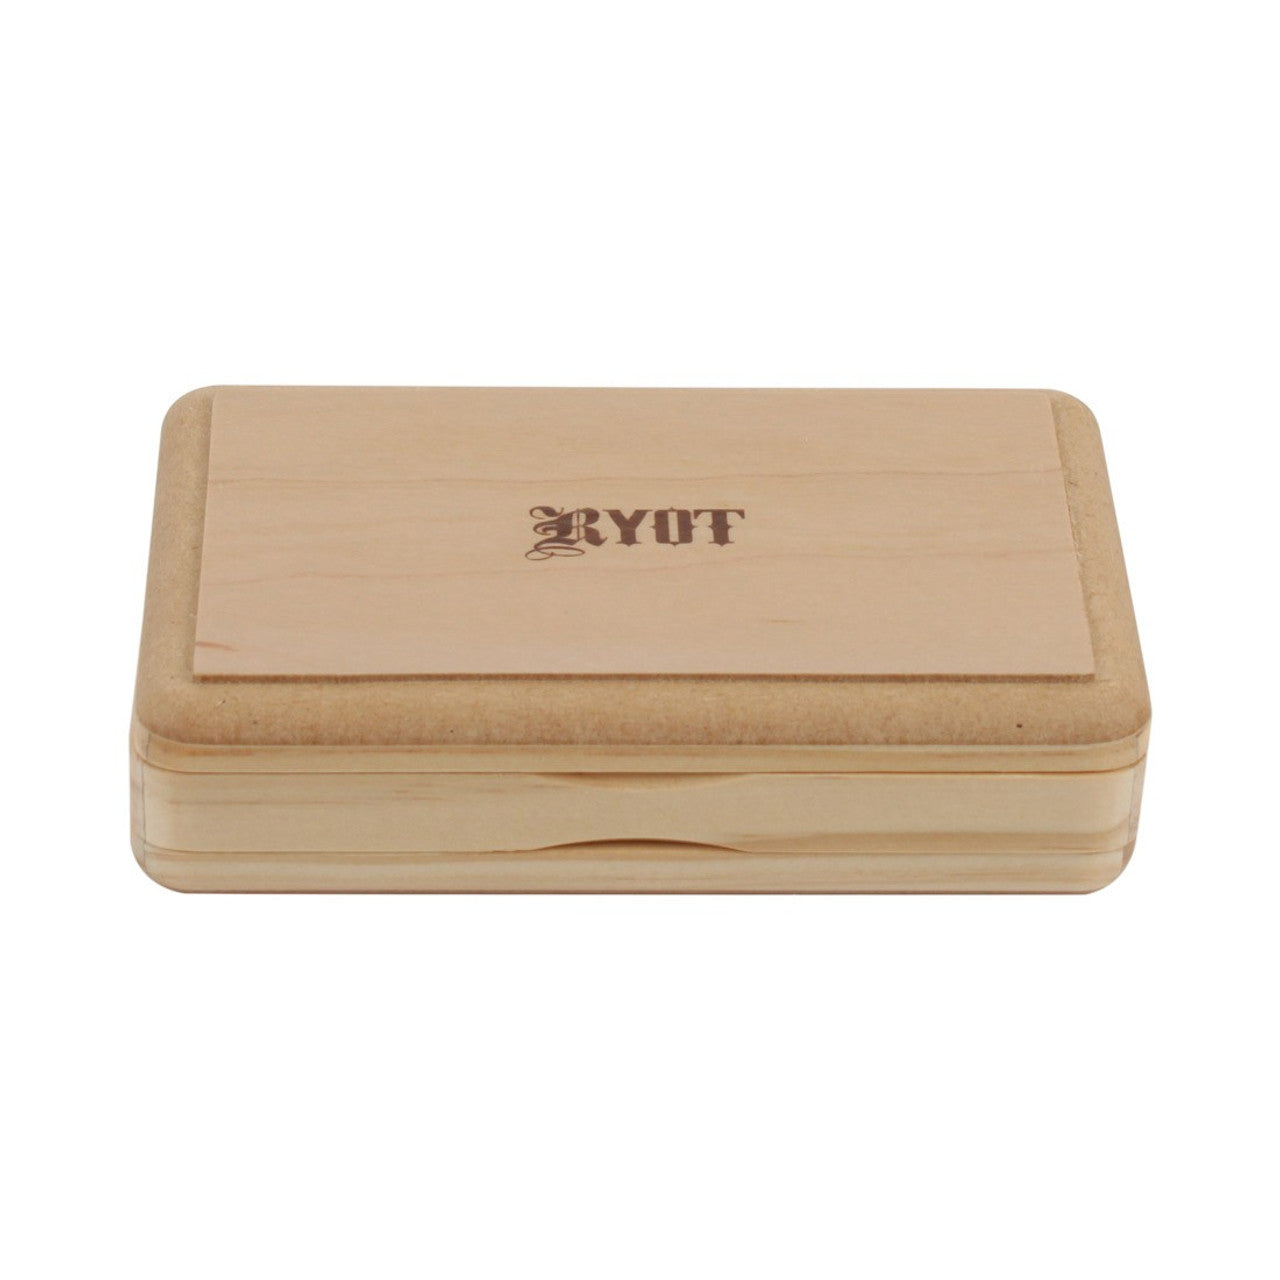 Ryot Solid Top Sifter Box Natural